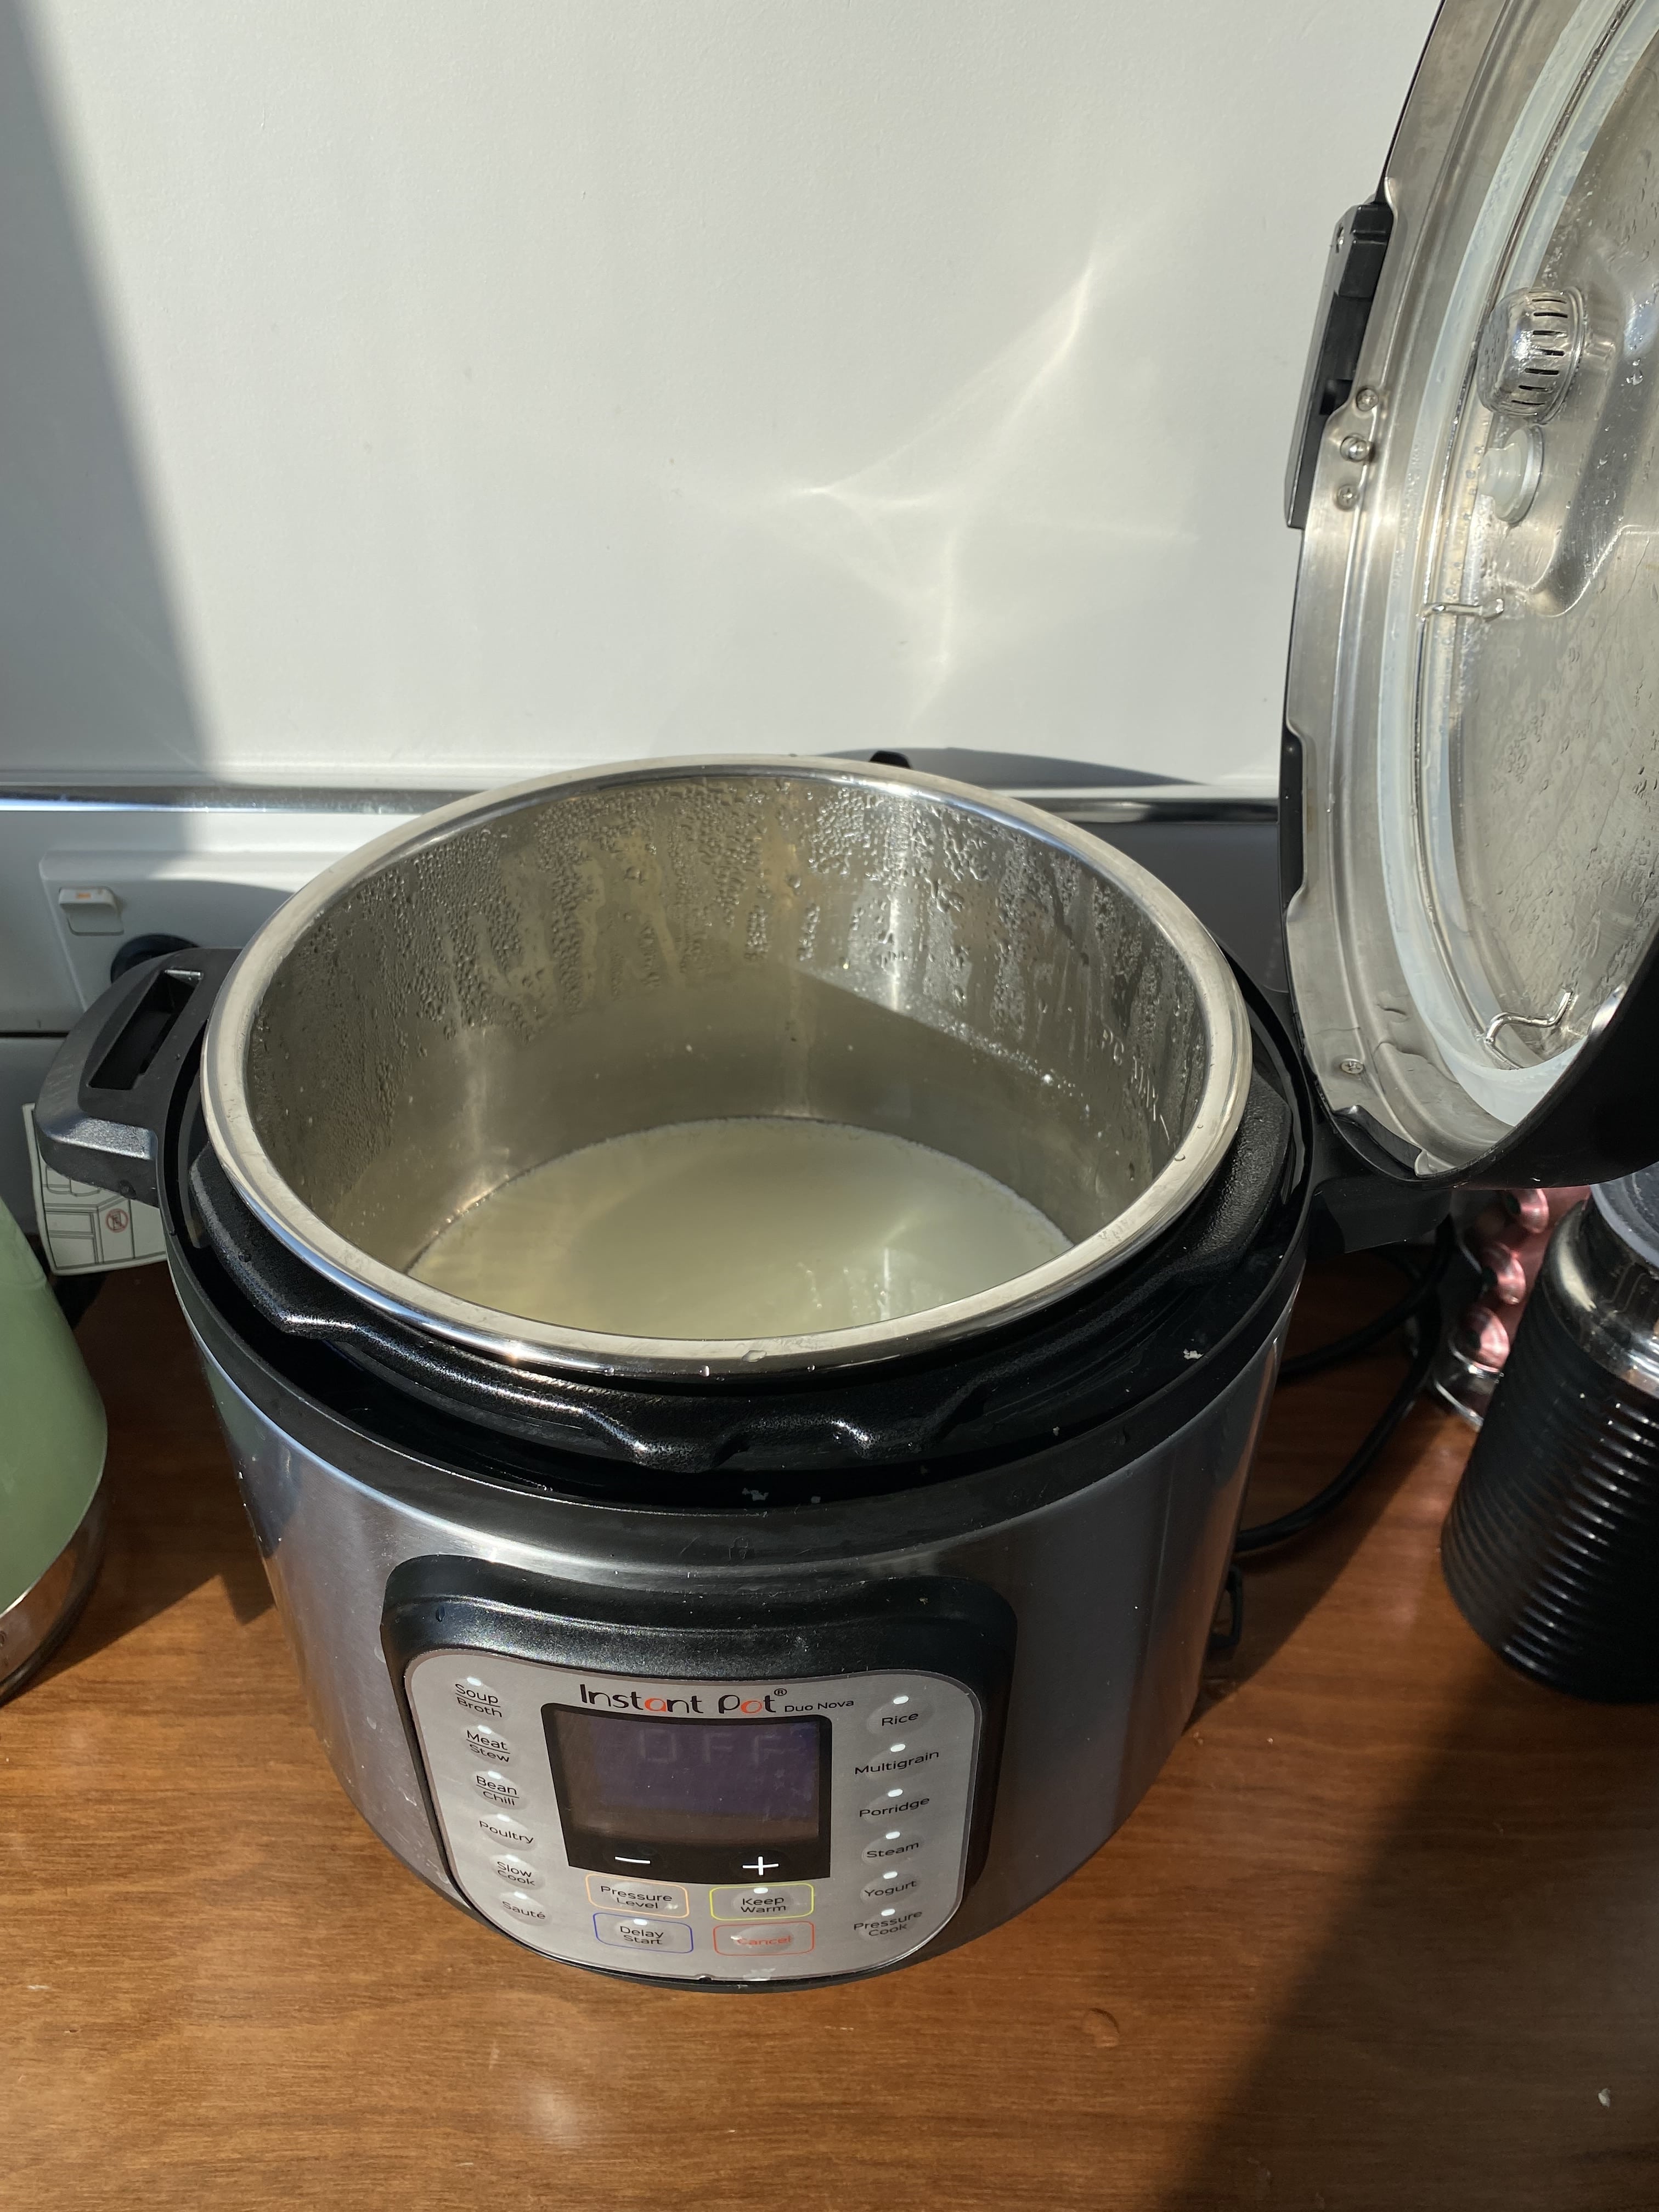 Homemade Yogurt in an Instant Pot, Moorlands Eater